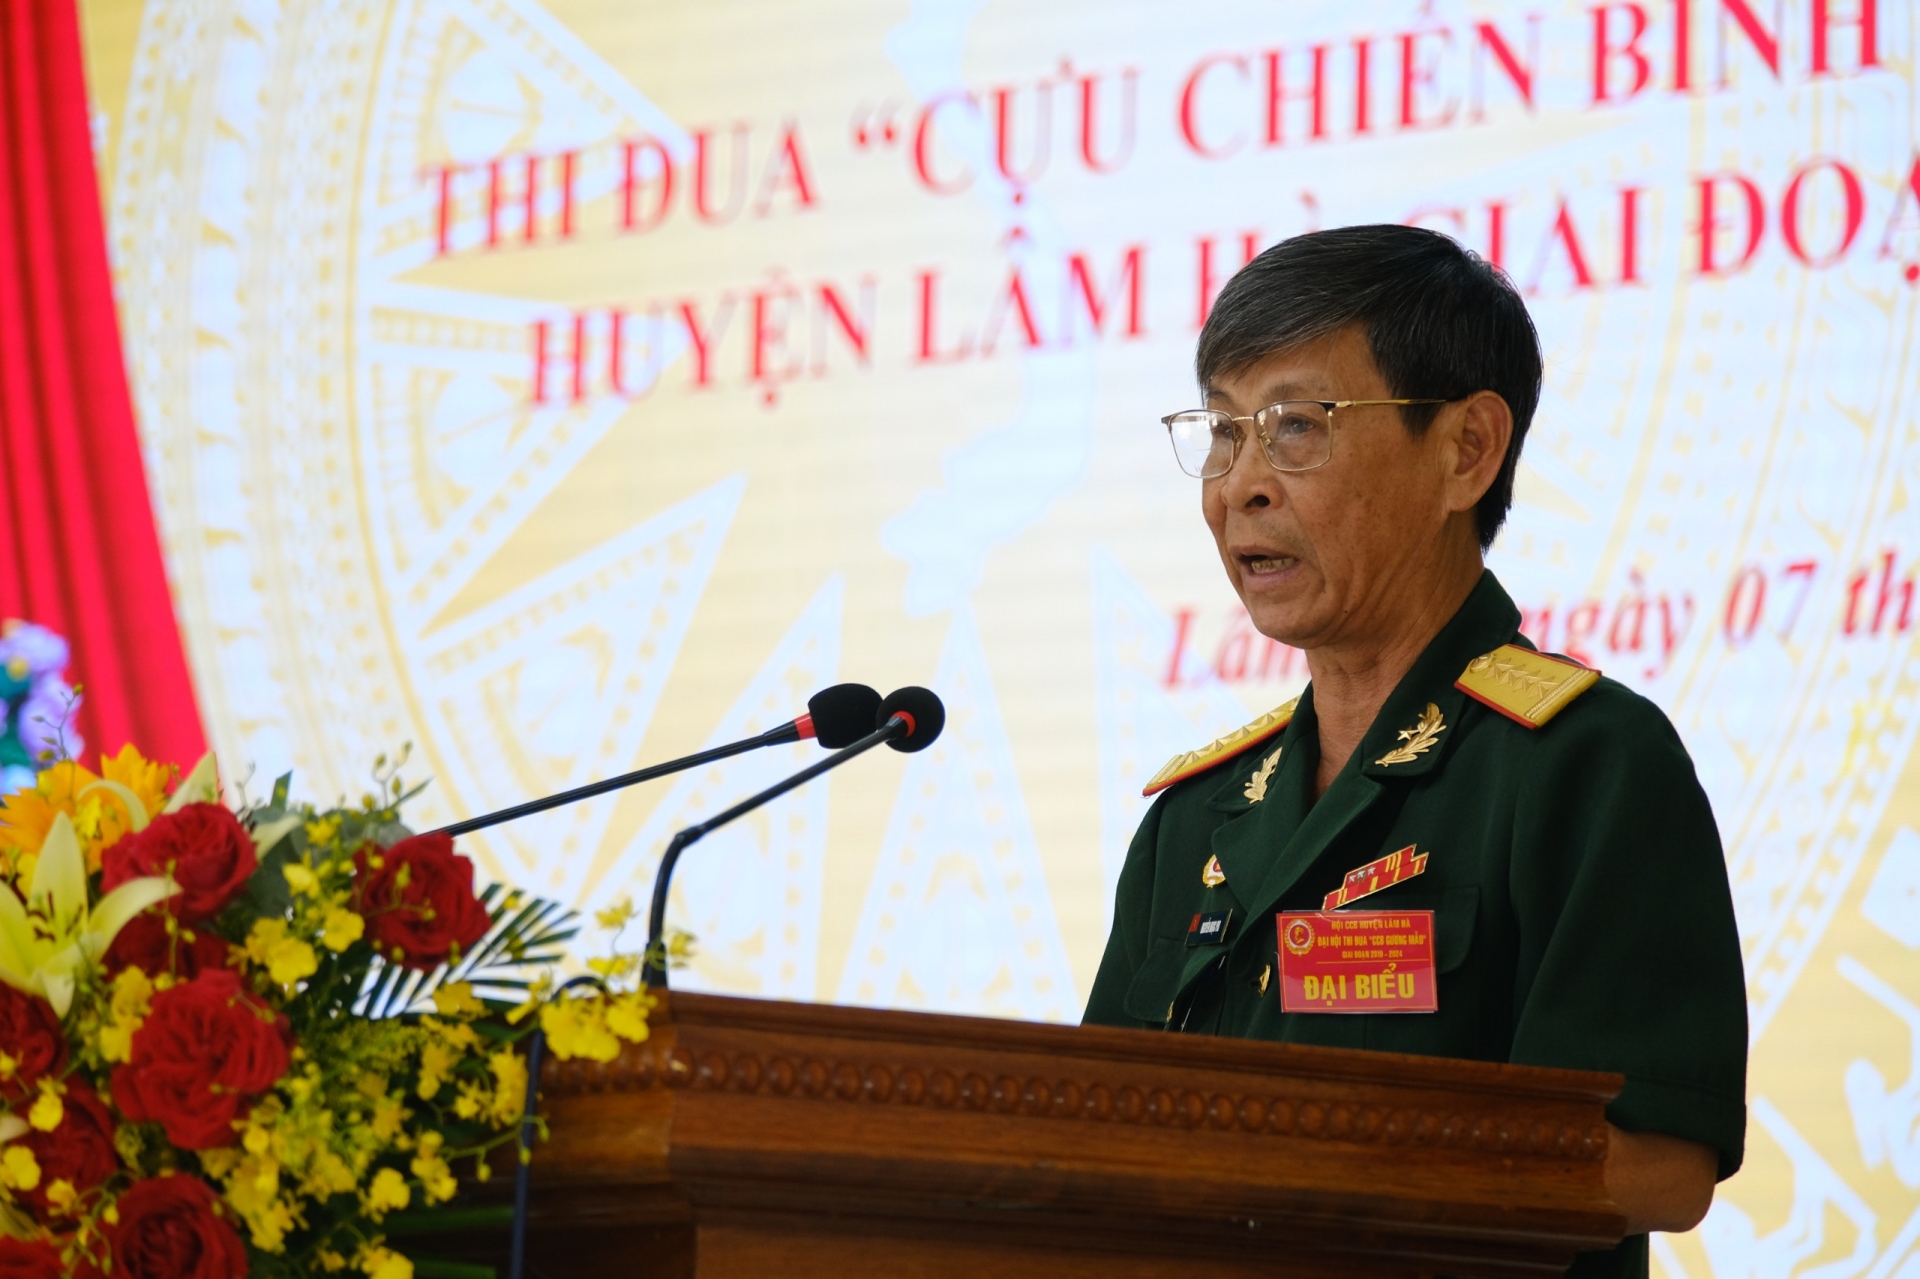 Ông Phạm Ngọc Phi - Chủ tịch Hội Cựu chiến binh huyện Lâm Hà phát biểu khai mạc Đại hội